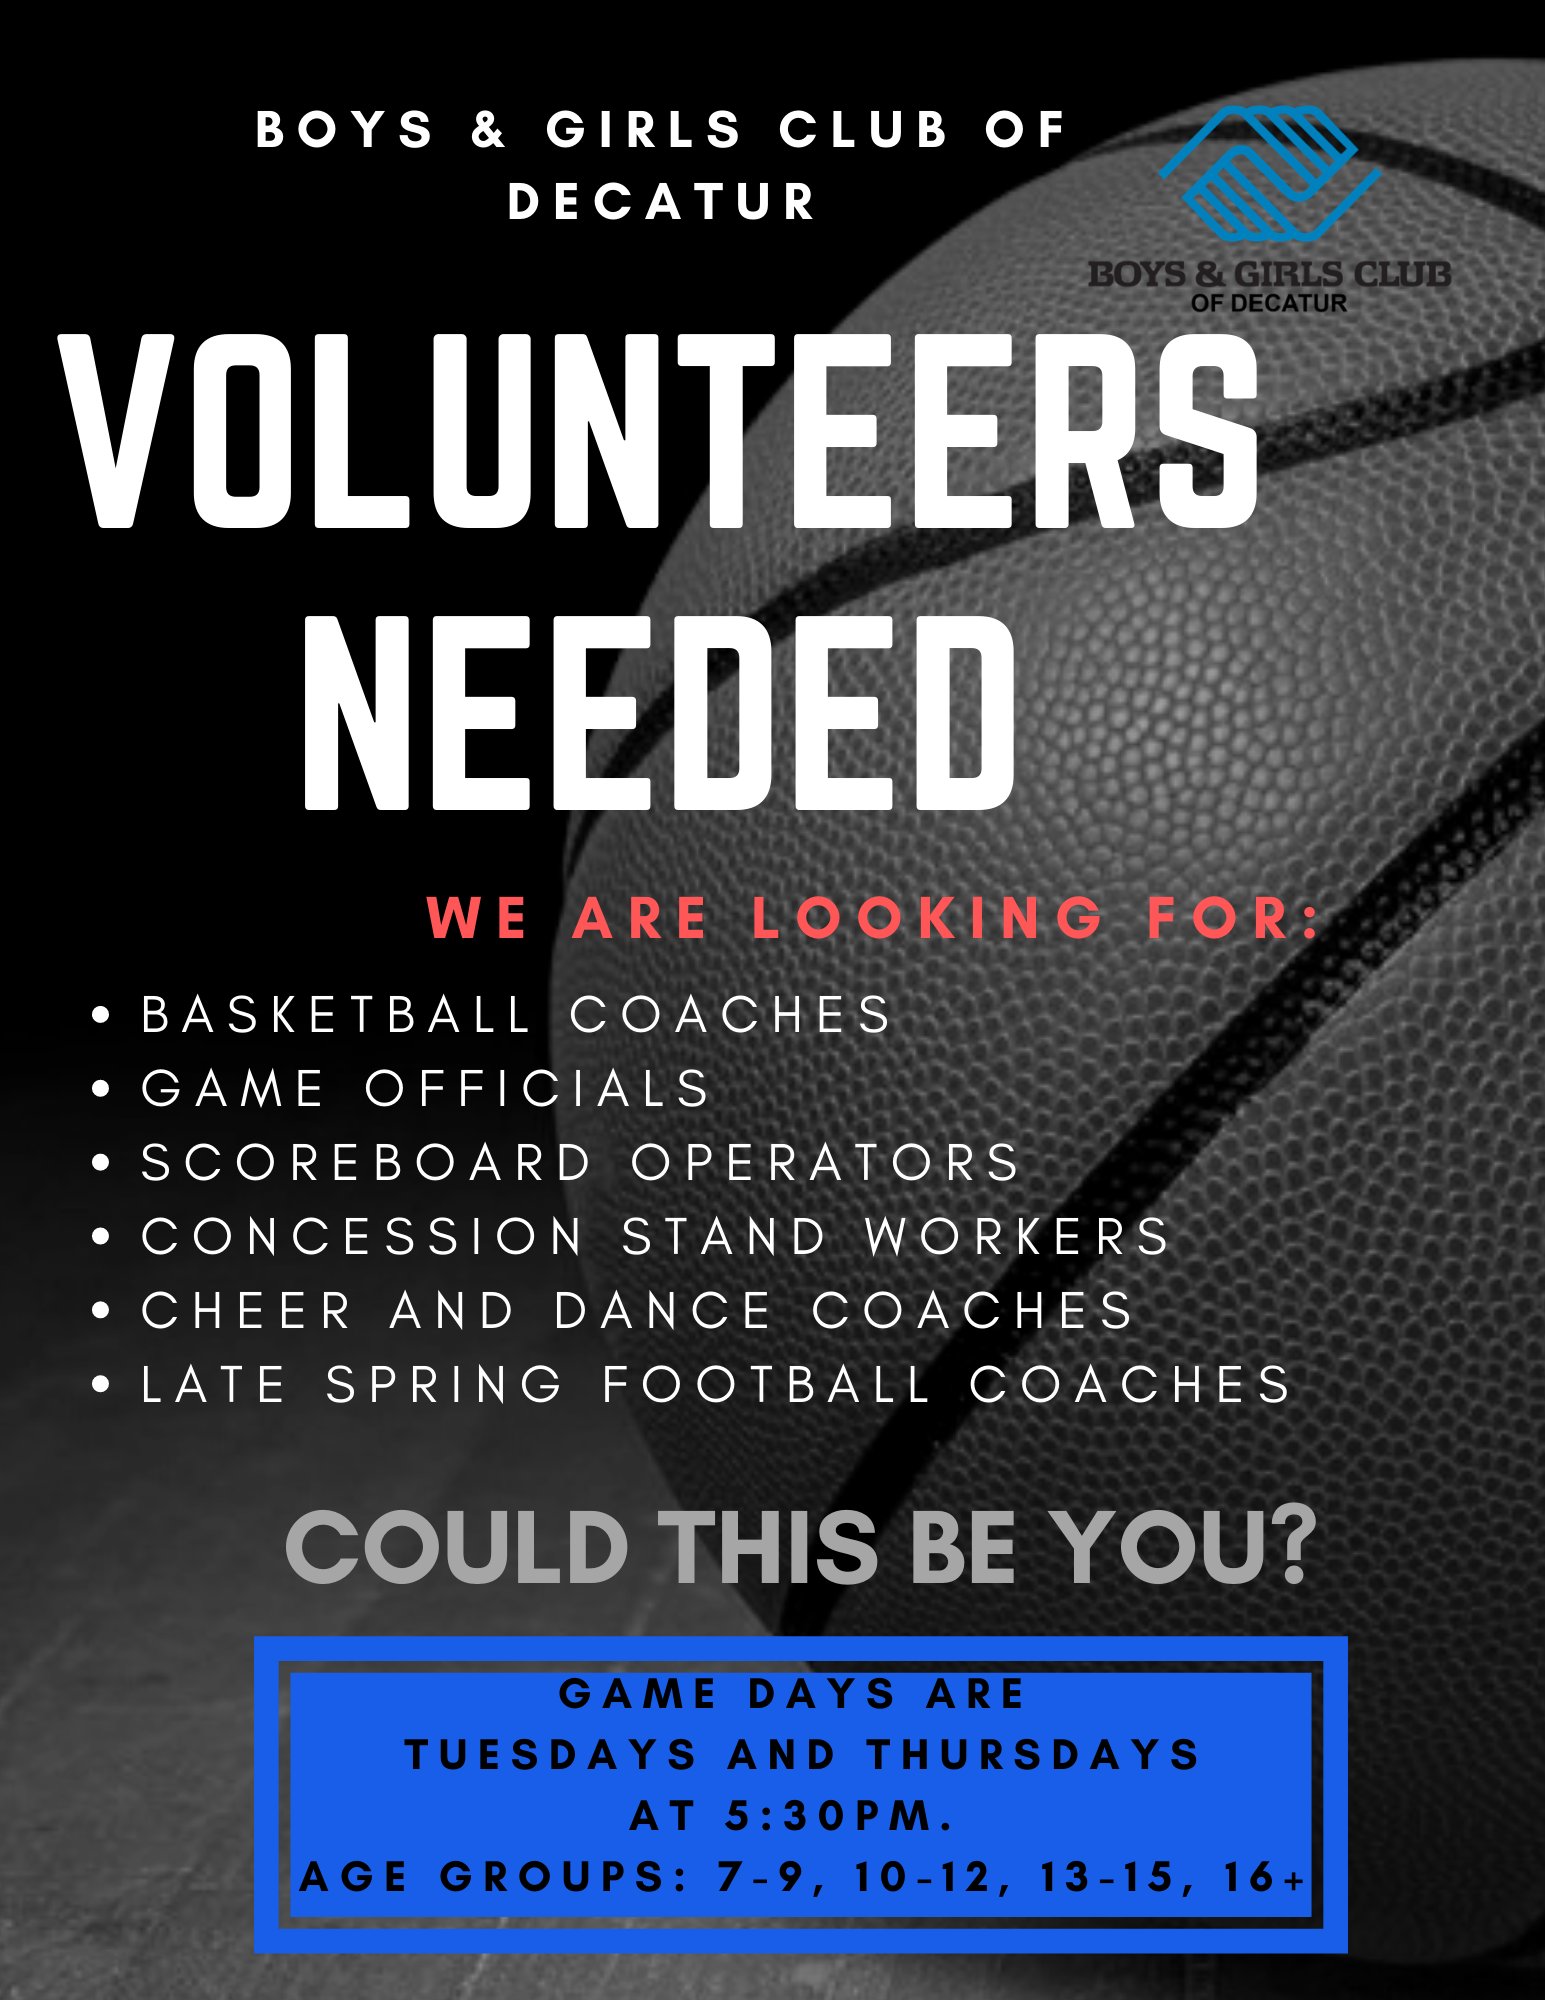 Free Decatur basketball camp seeking volunteers